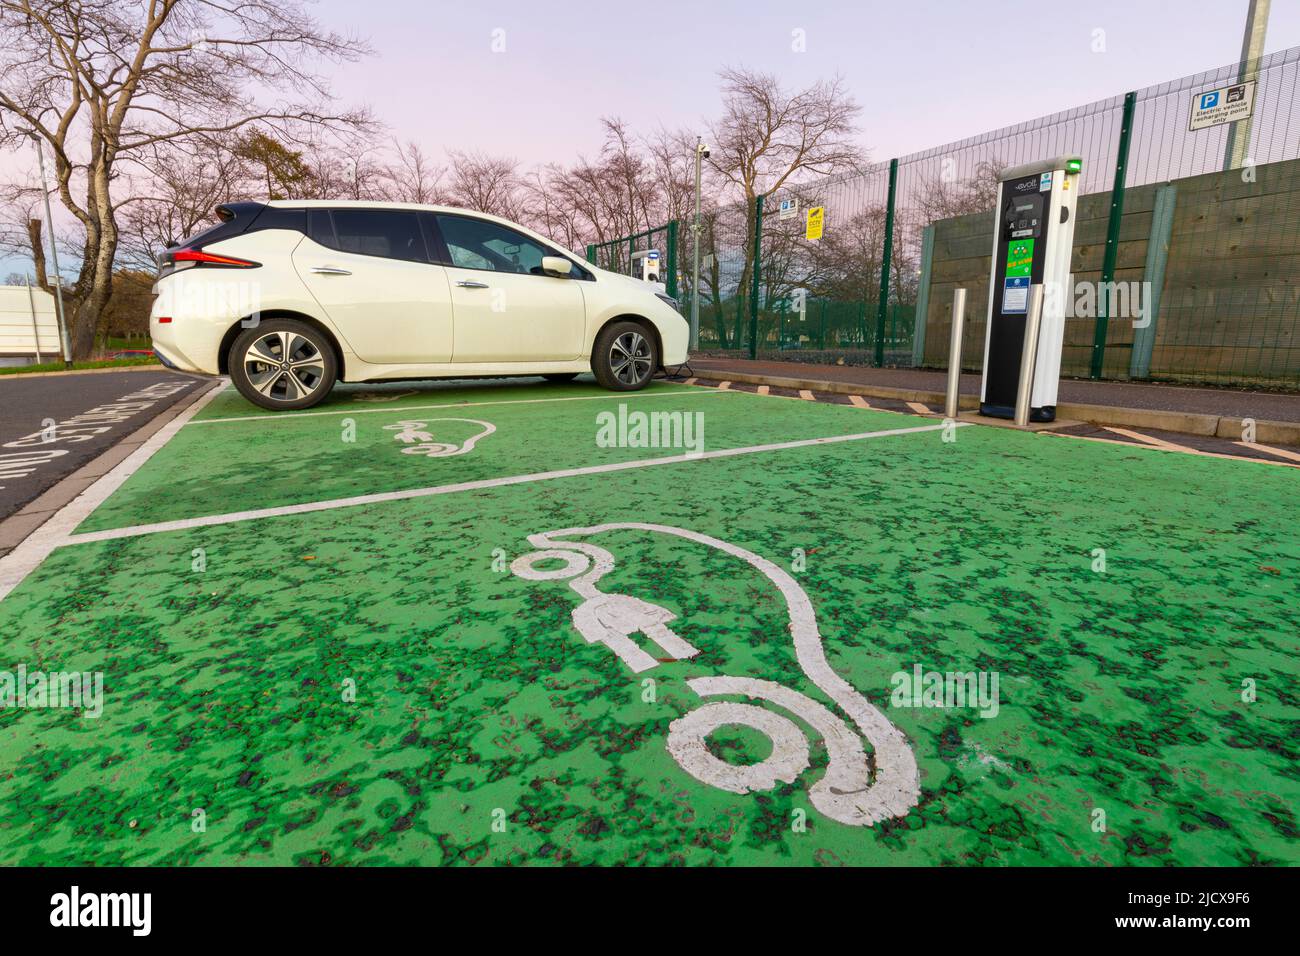 Point de recharge pour voiture électrique et place de parking, Glasgow, Écosse, Royaume-Uni, Europe Banque D'Images